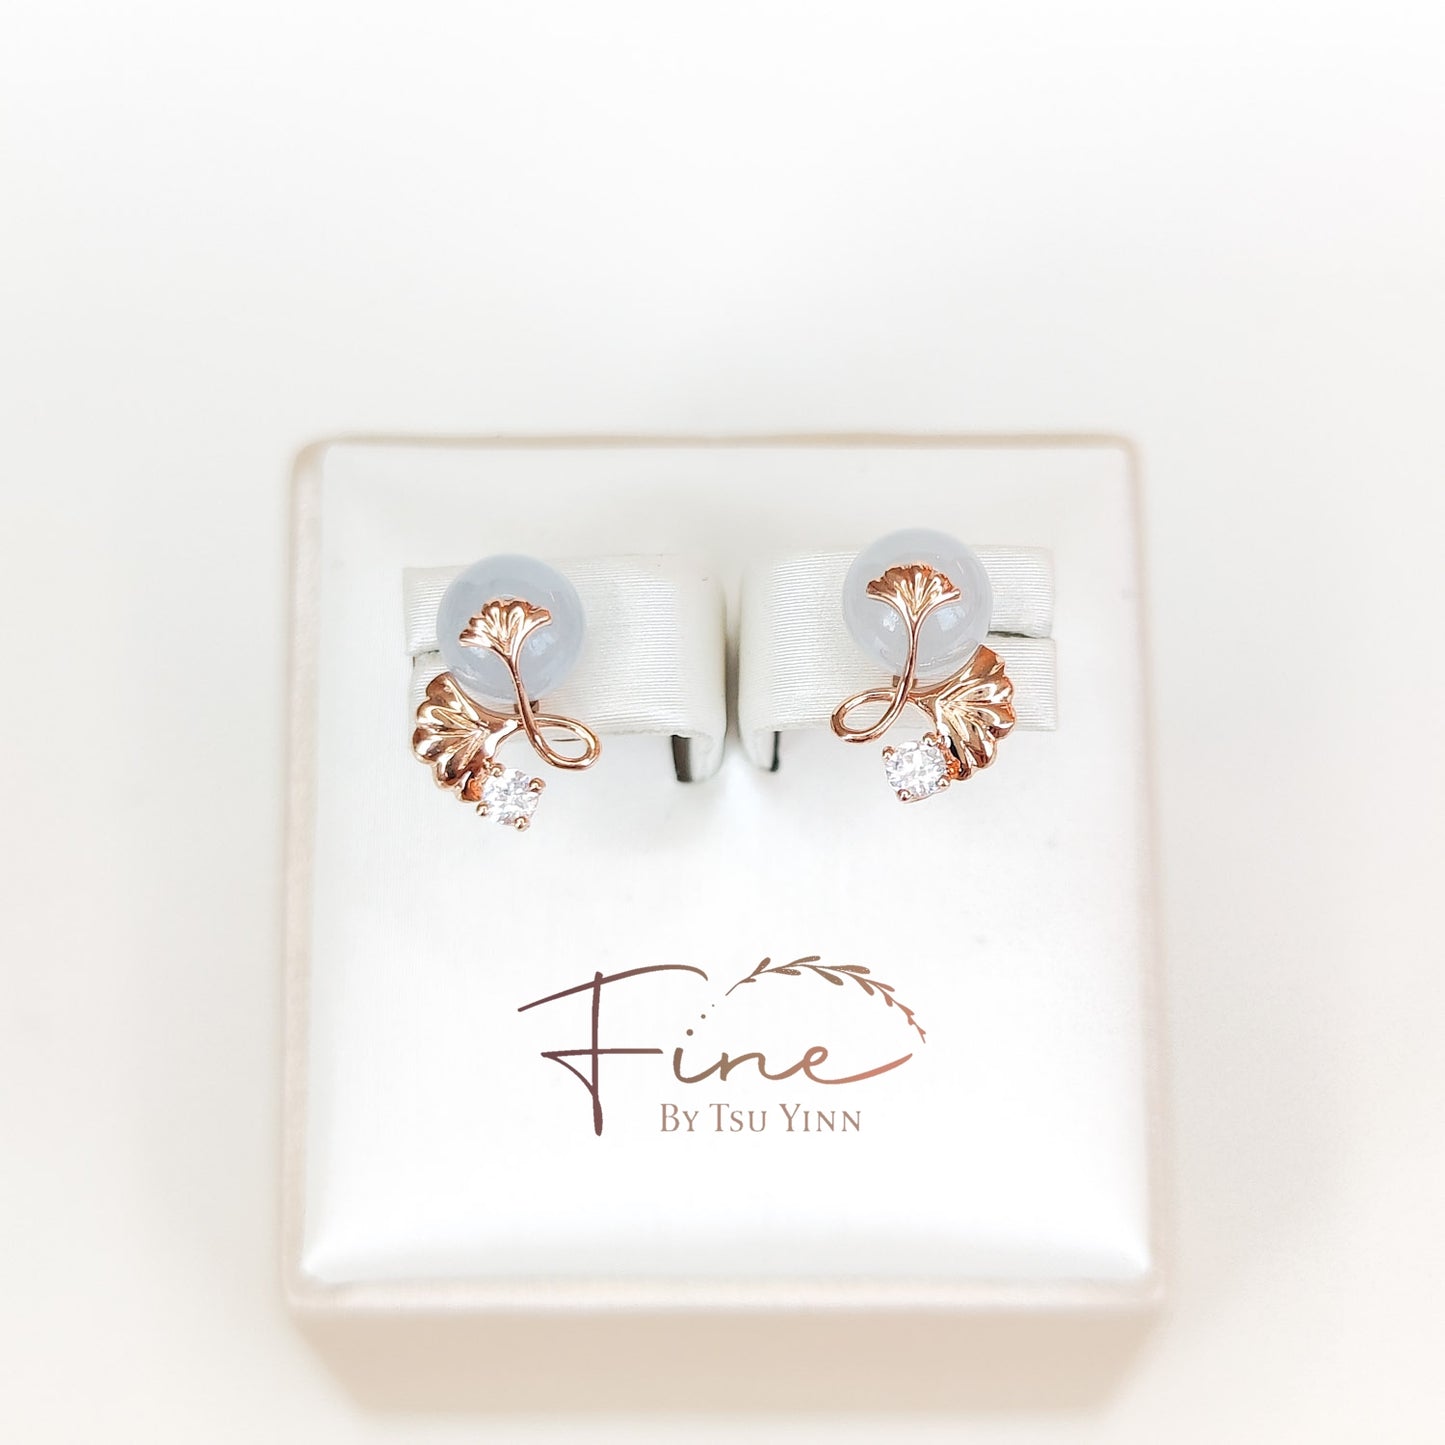 FBTY Lara Jadeite Earrings - White Sapphires